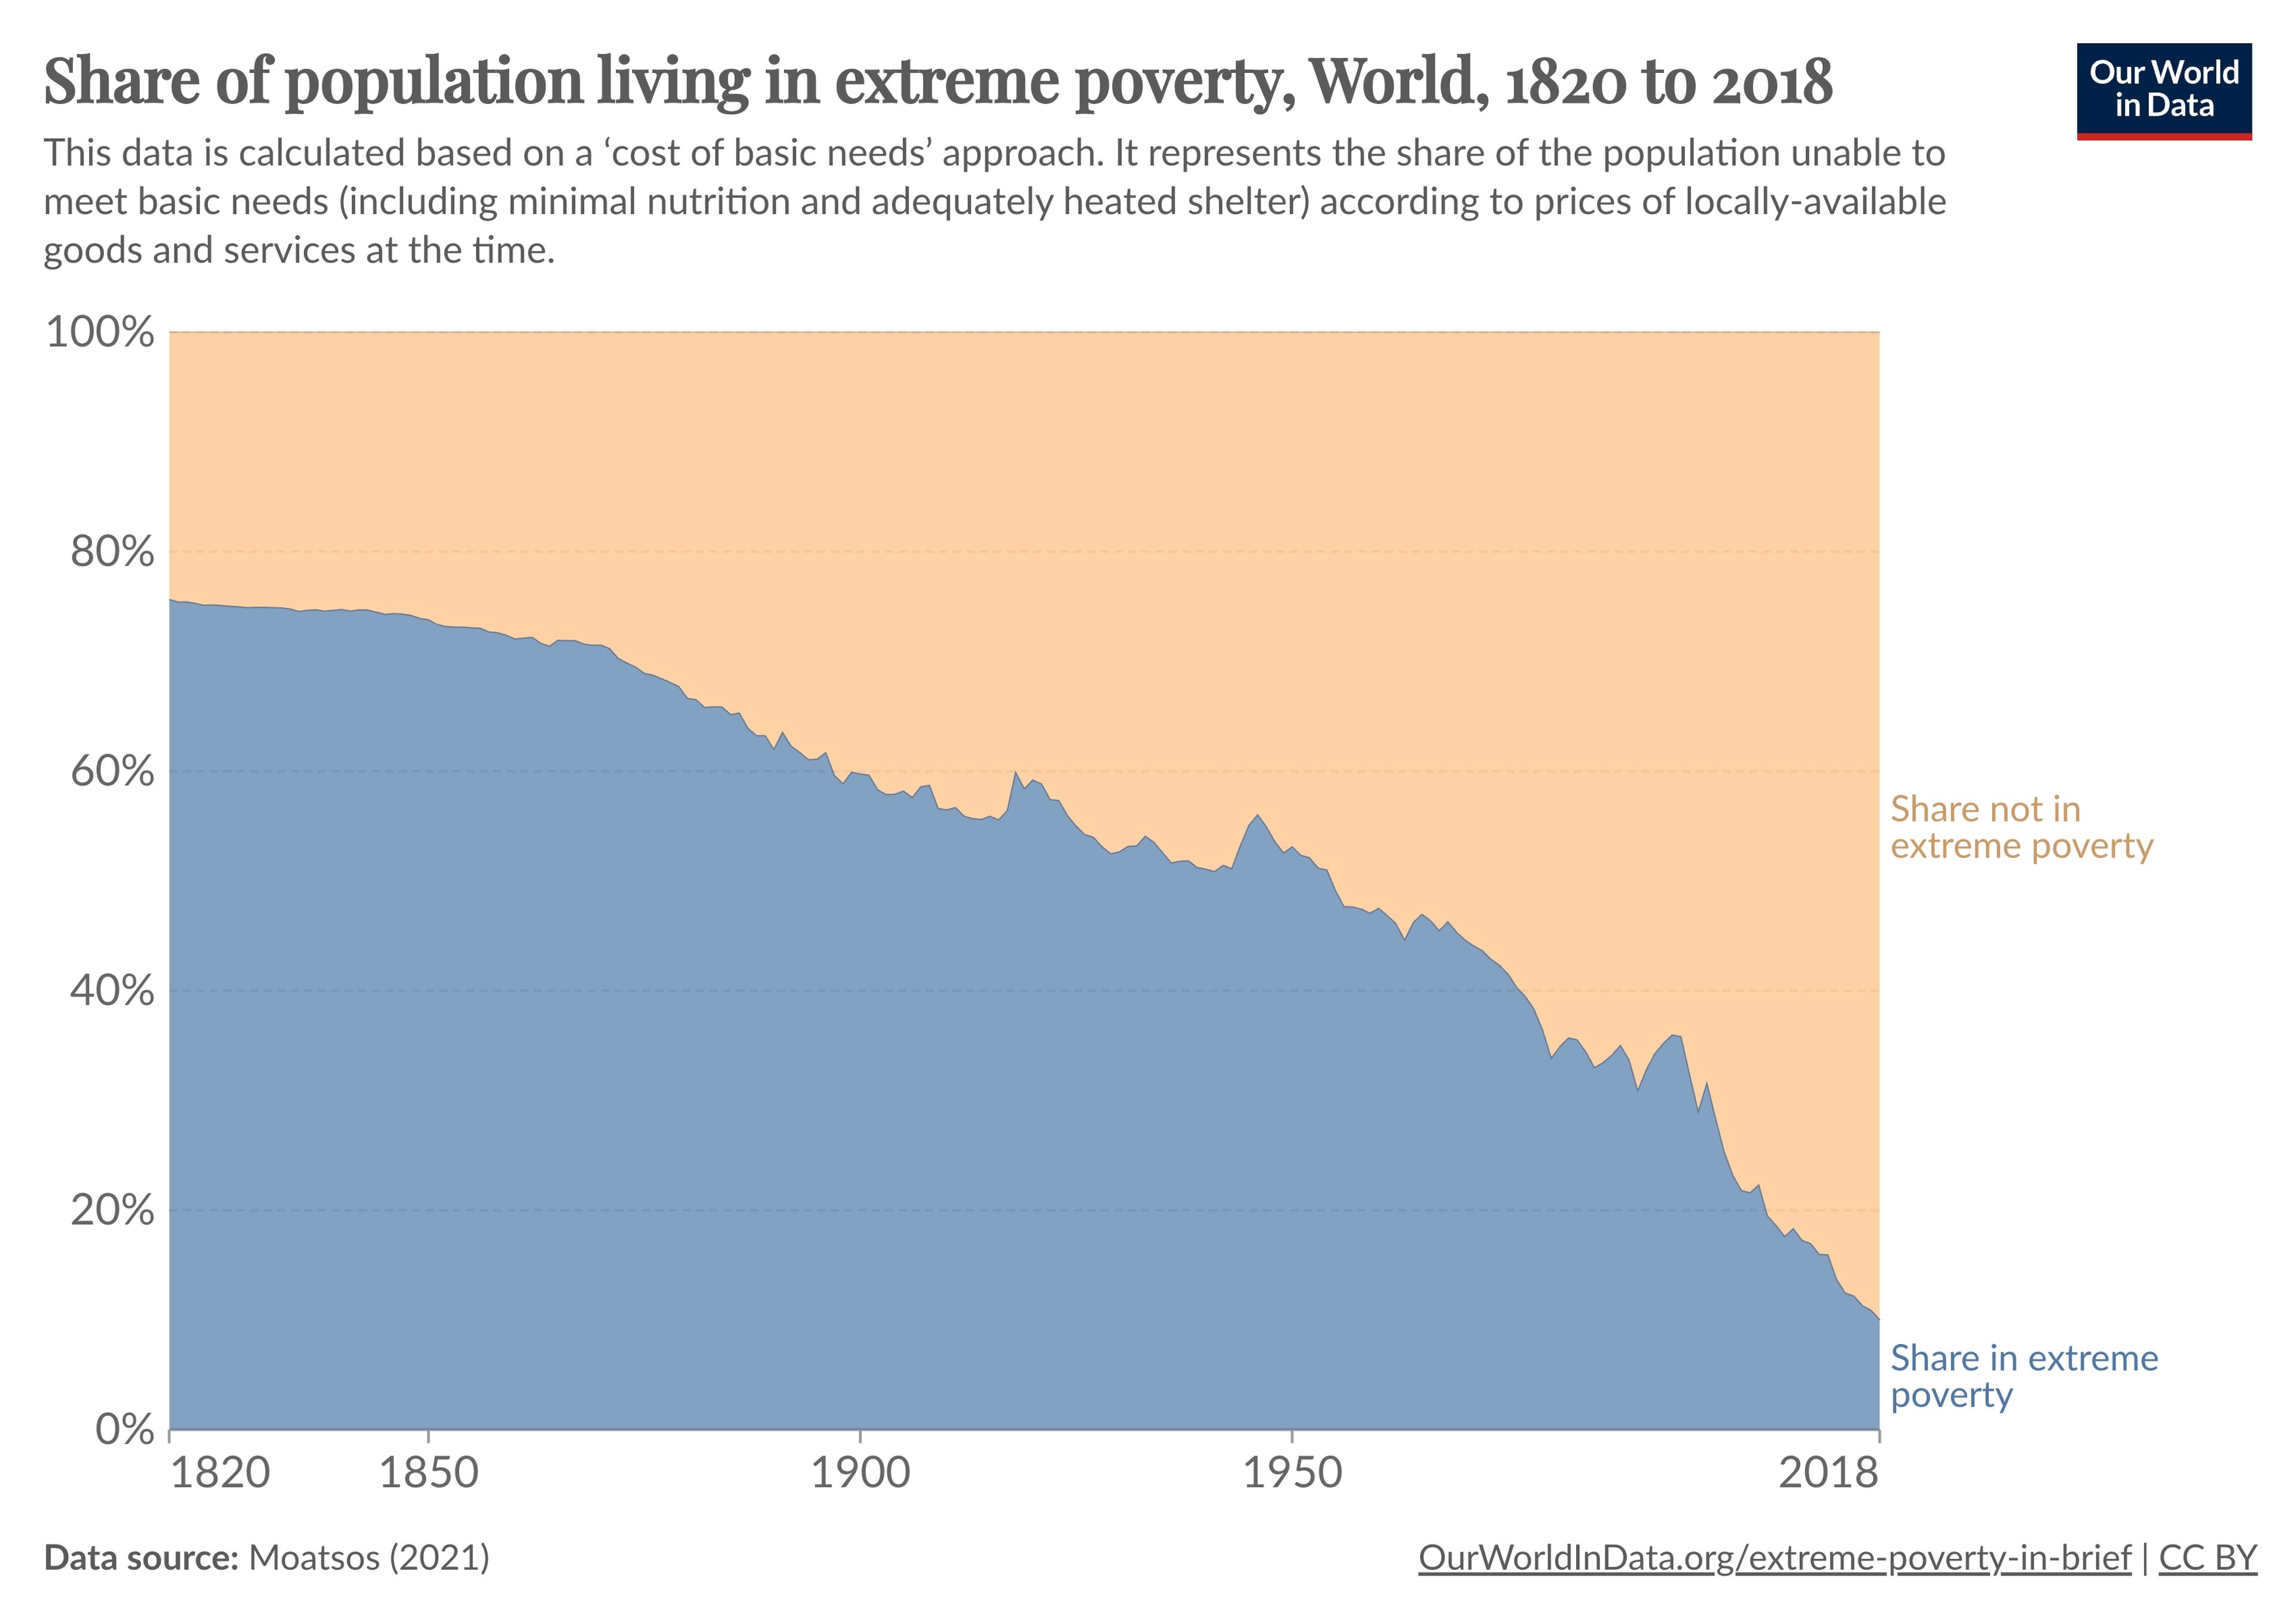 Evolución del porcentaje de la población que vive en la pobreza extrema, de 1820 a 2018.